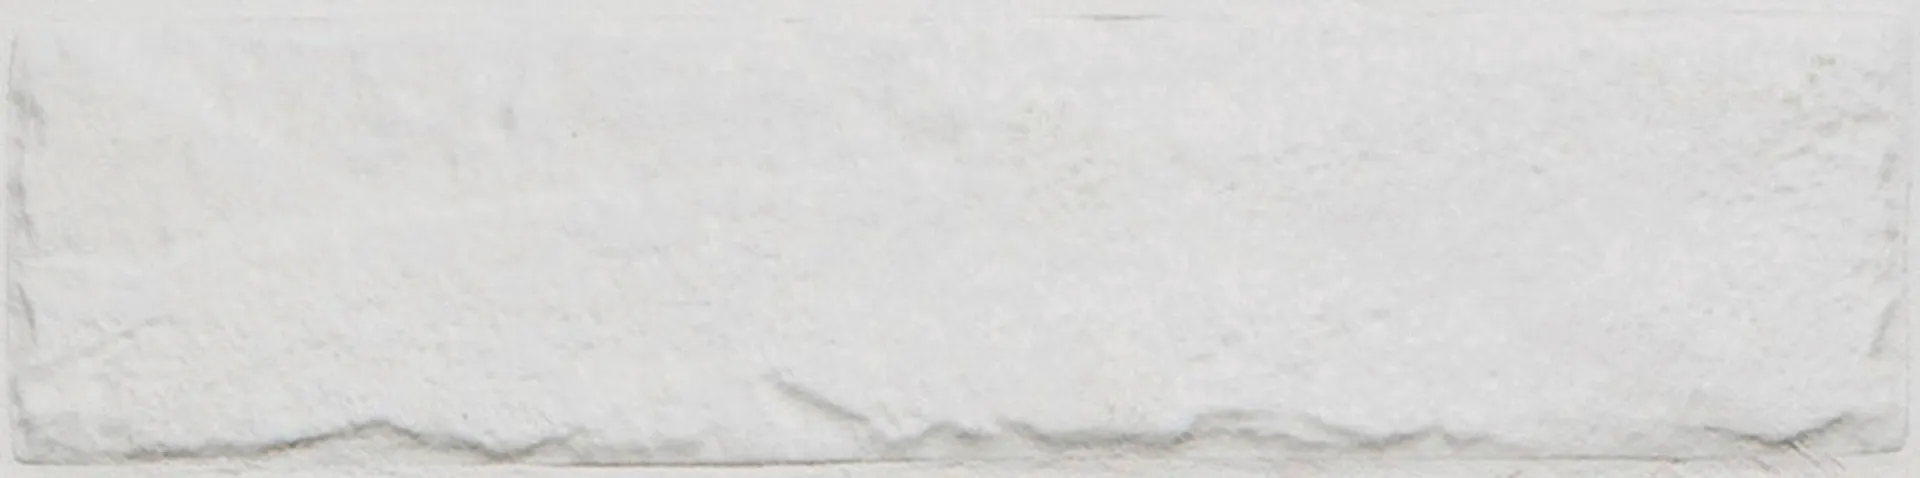 LPC LVN Brick lasitettu porcelanato 6X25 14 valkoinen strukturoitu matta - 1